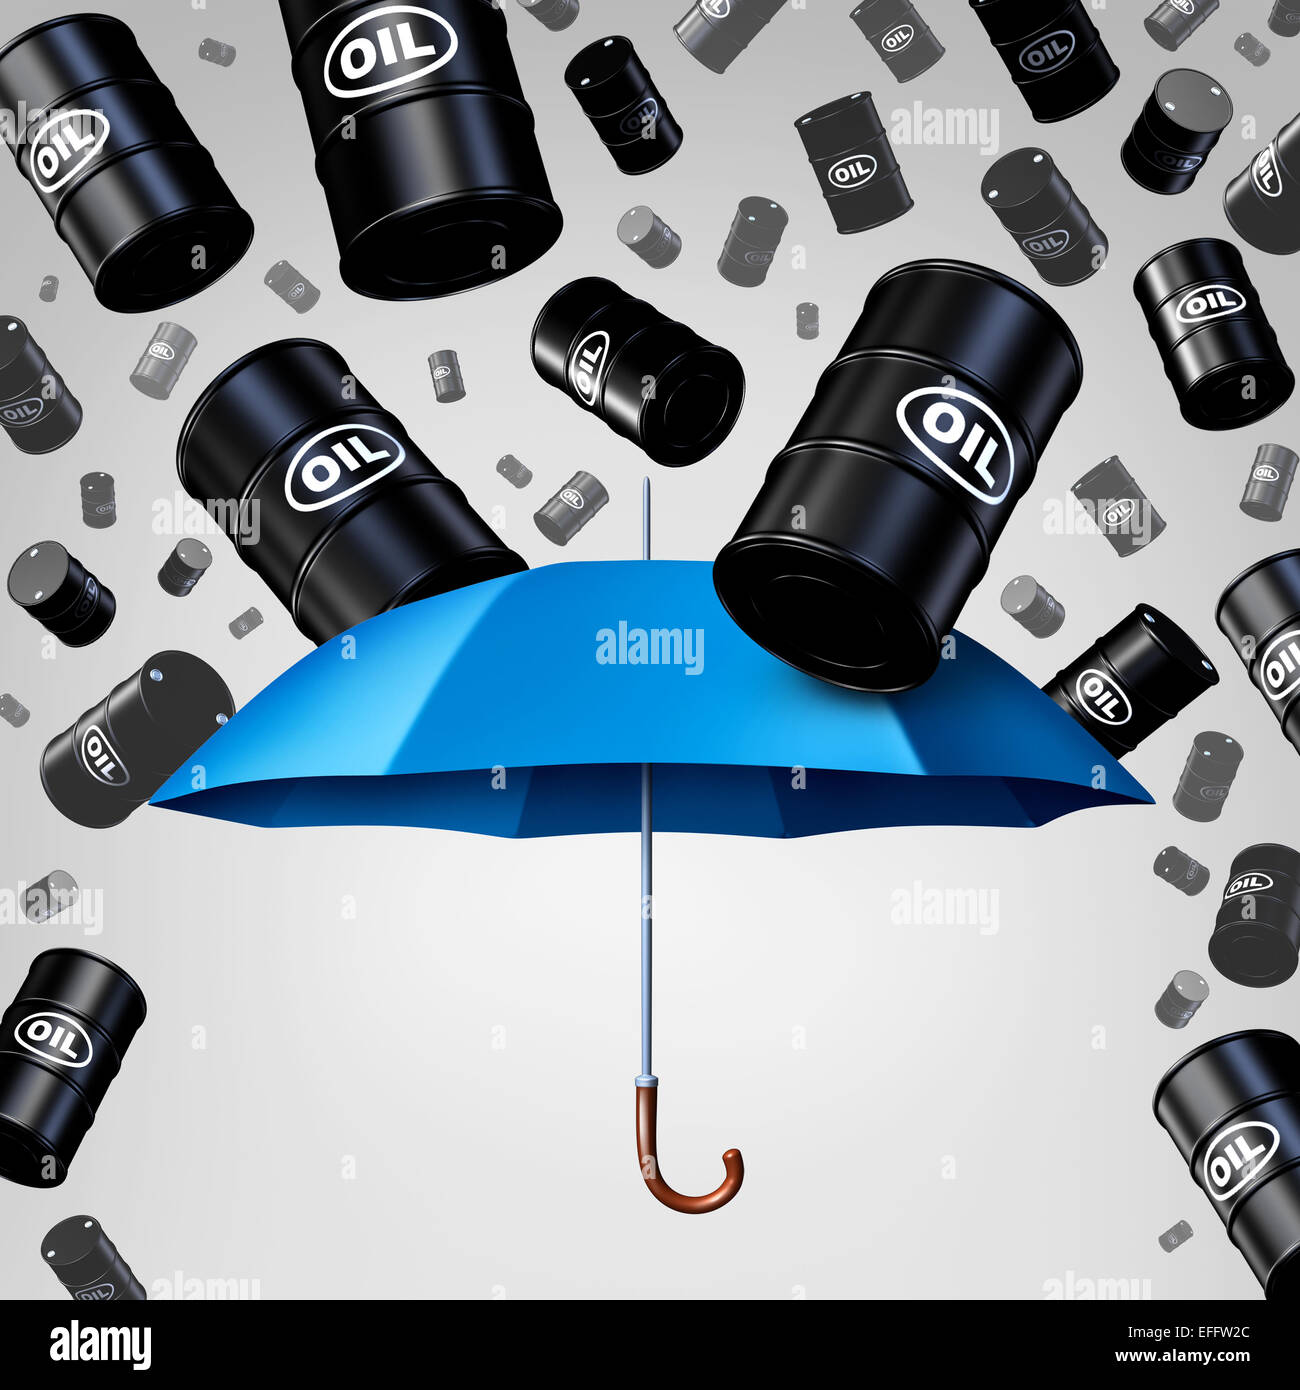 Concepto de protección de aceite cayendo como un grupo de barriles de petróleo crudo que llueven con un paraguas azul como una metáfora de la seguridad como un símbolo de la disminución de los precios de la energía fósil, debido a la sobreoferta. Foto de stock